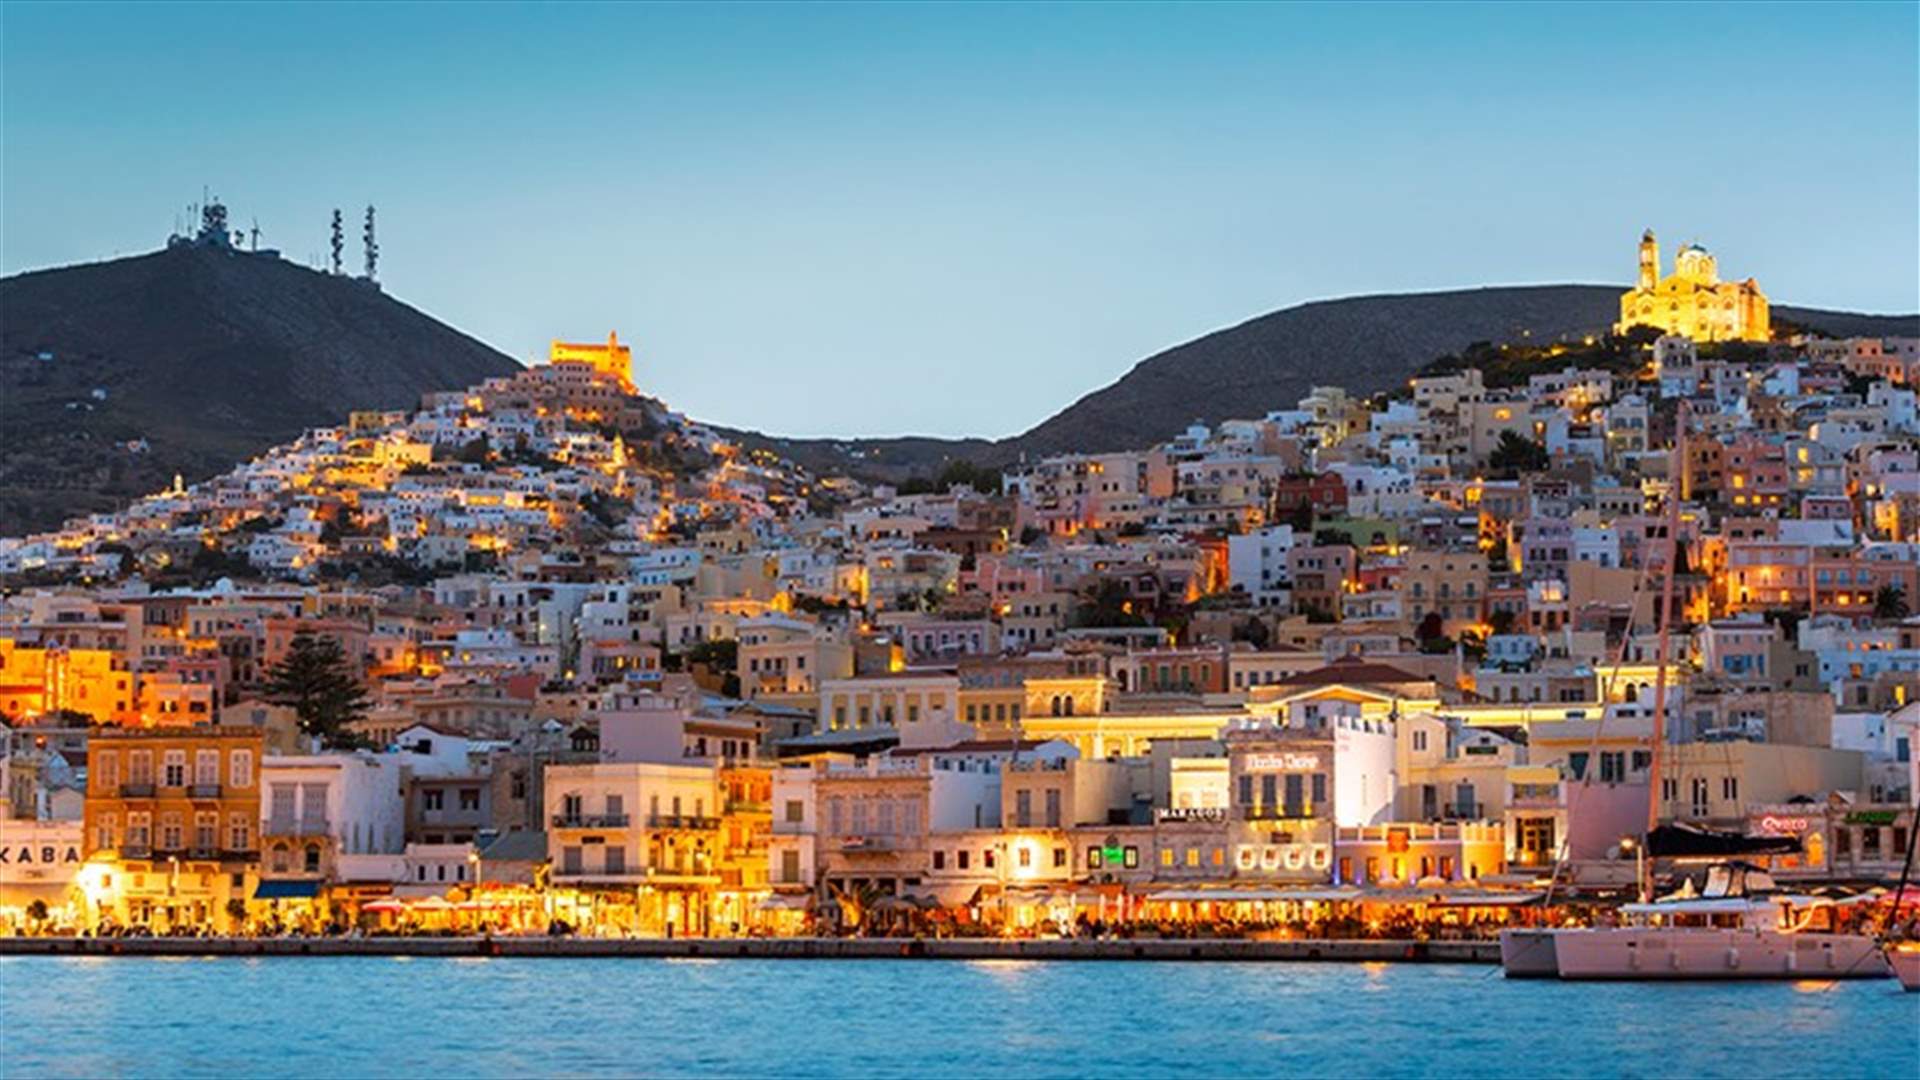 وظيفة الأحلام في جزيرة يونانية... لكن بشرط واحد!